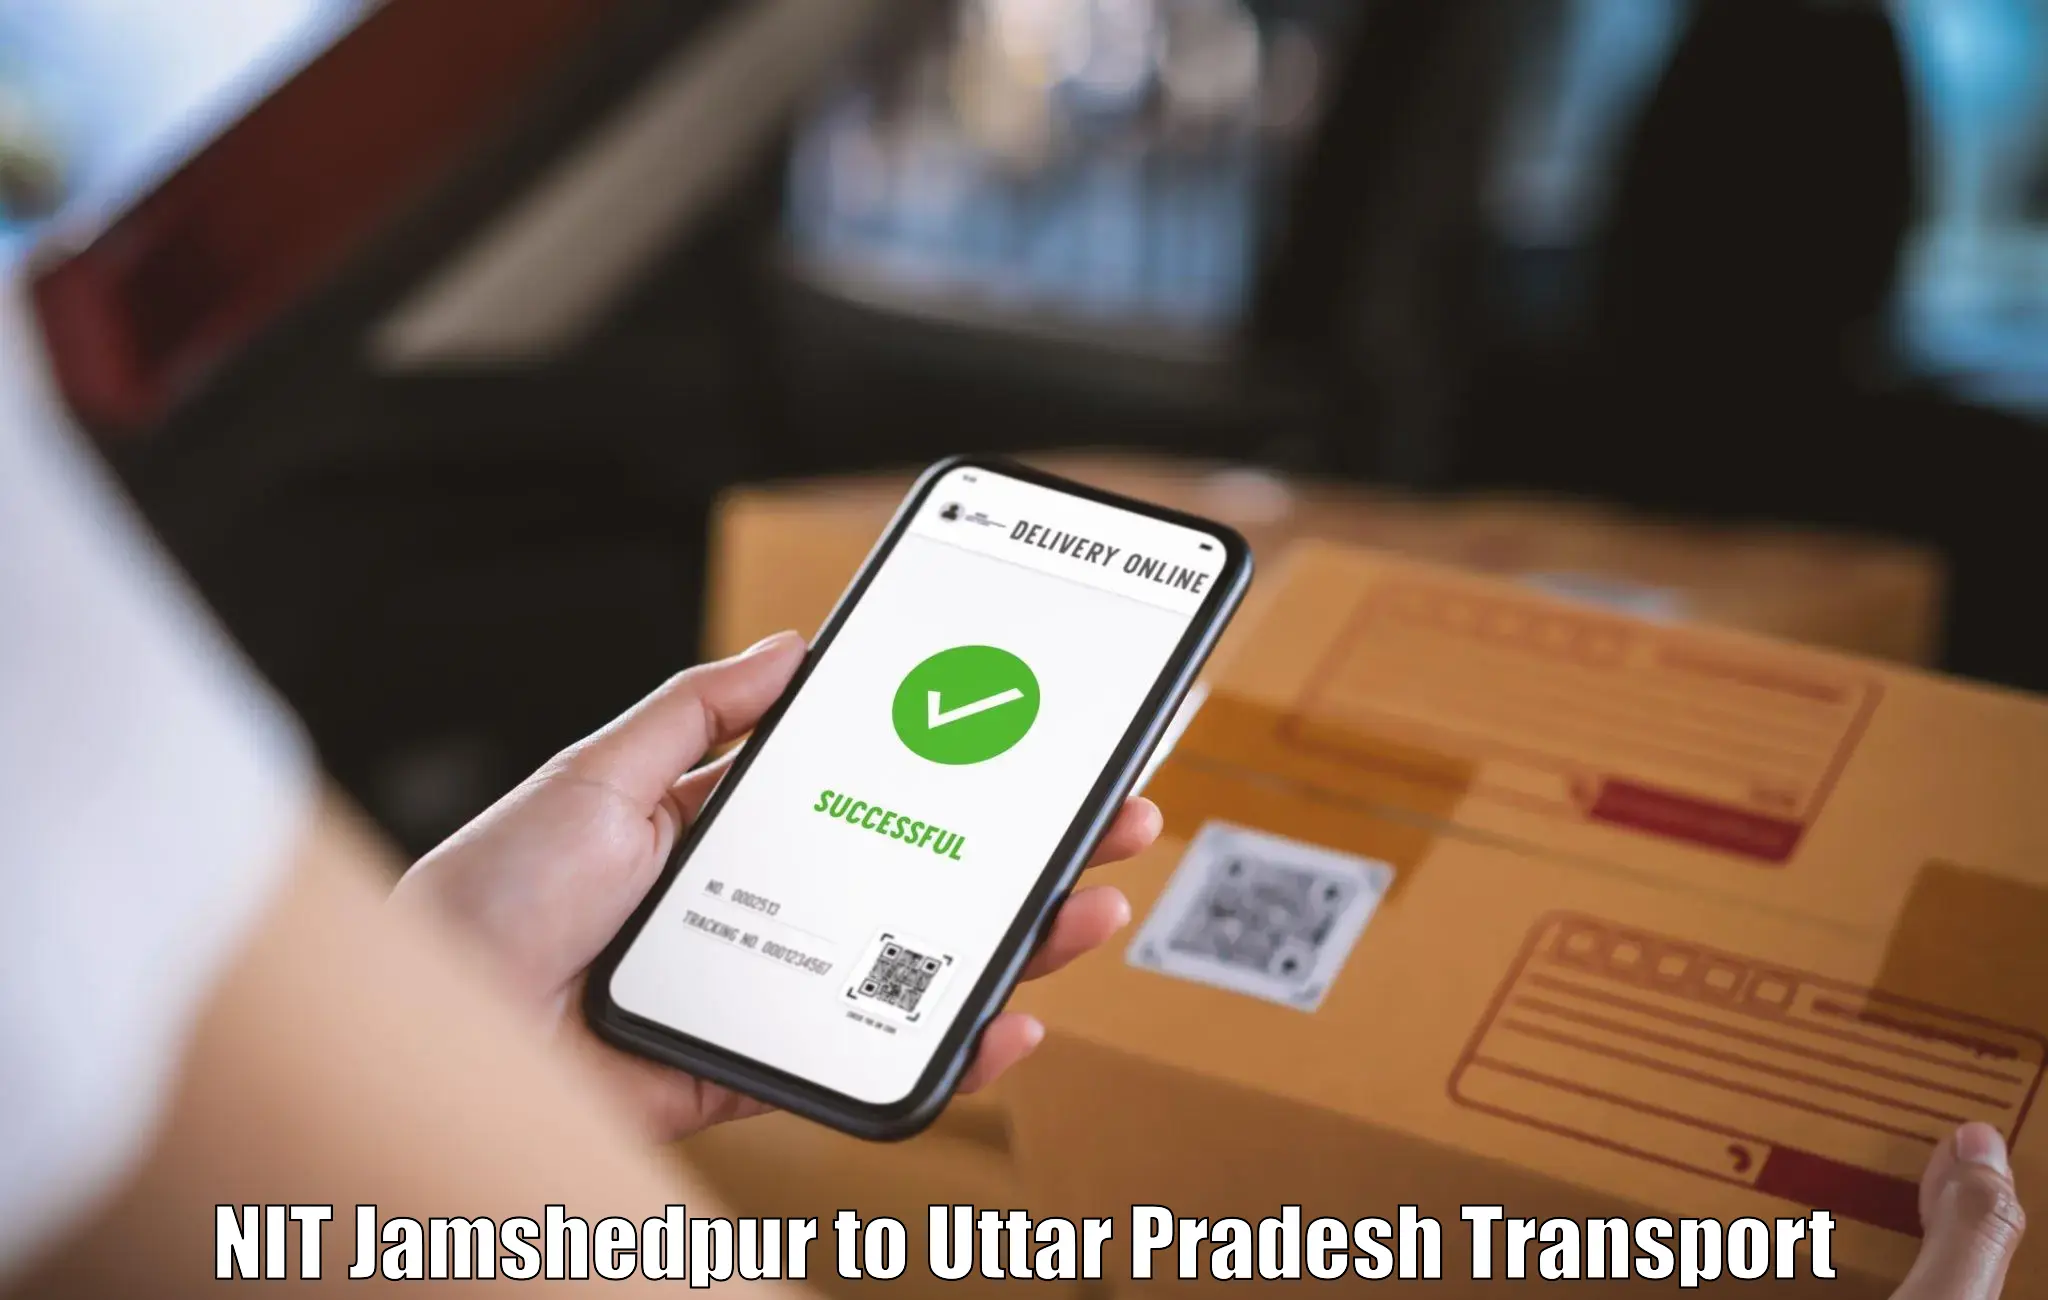 Transport in sharing NIT Jamshedpur to Kannauj